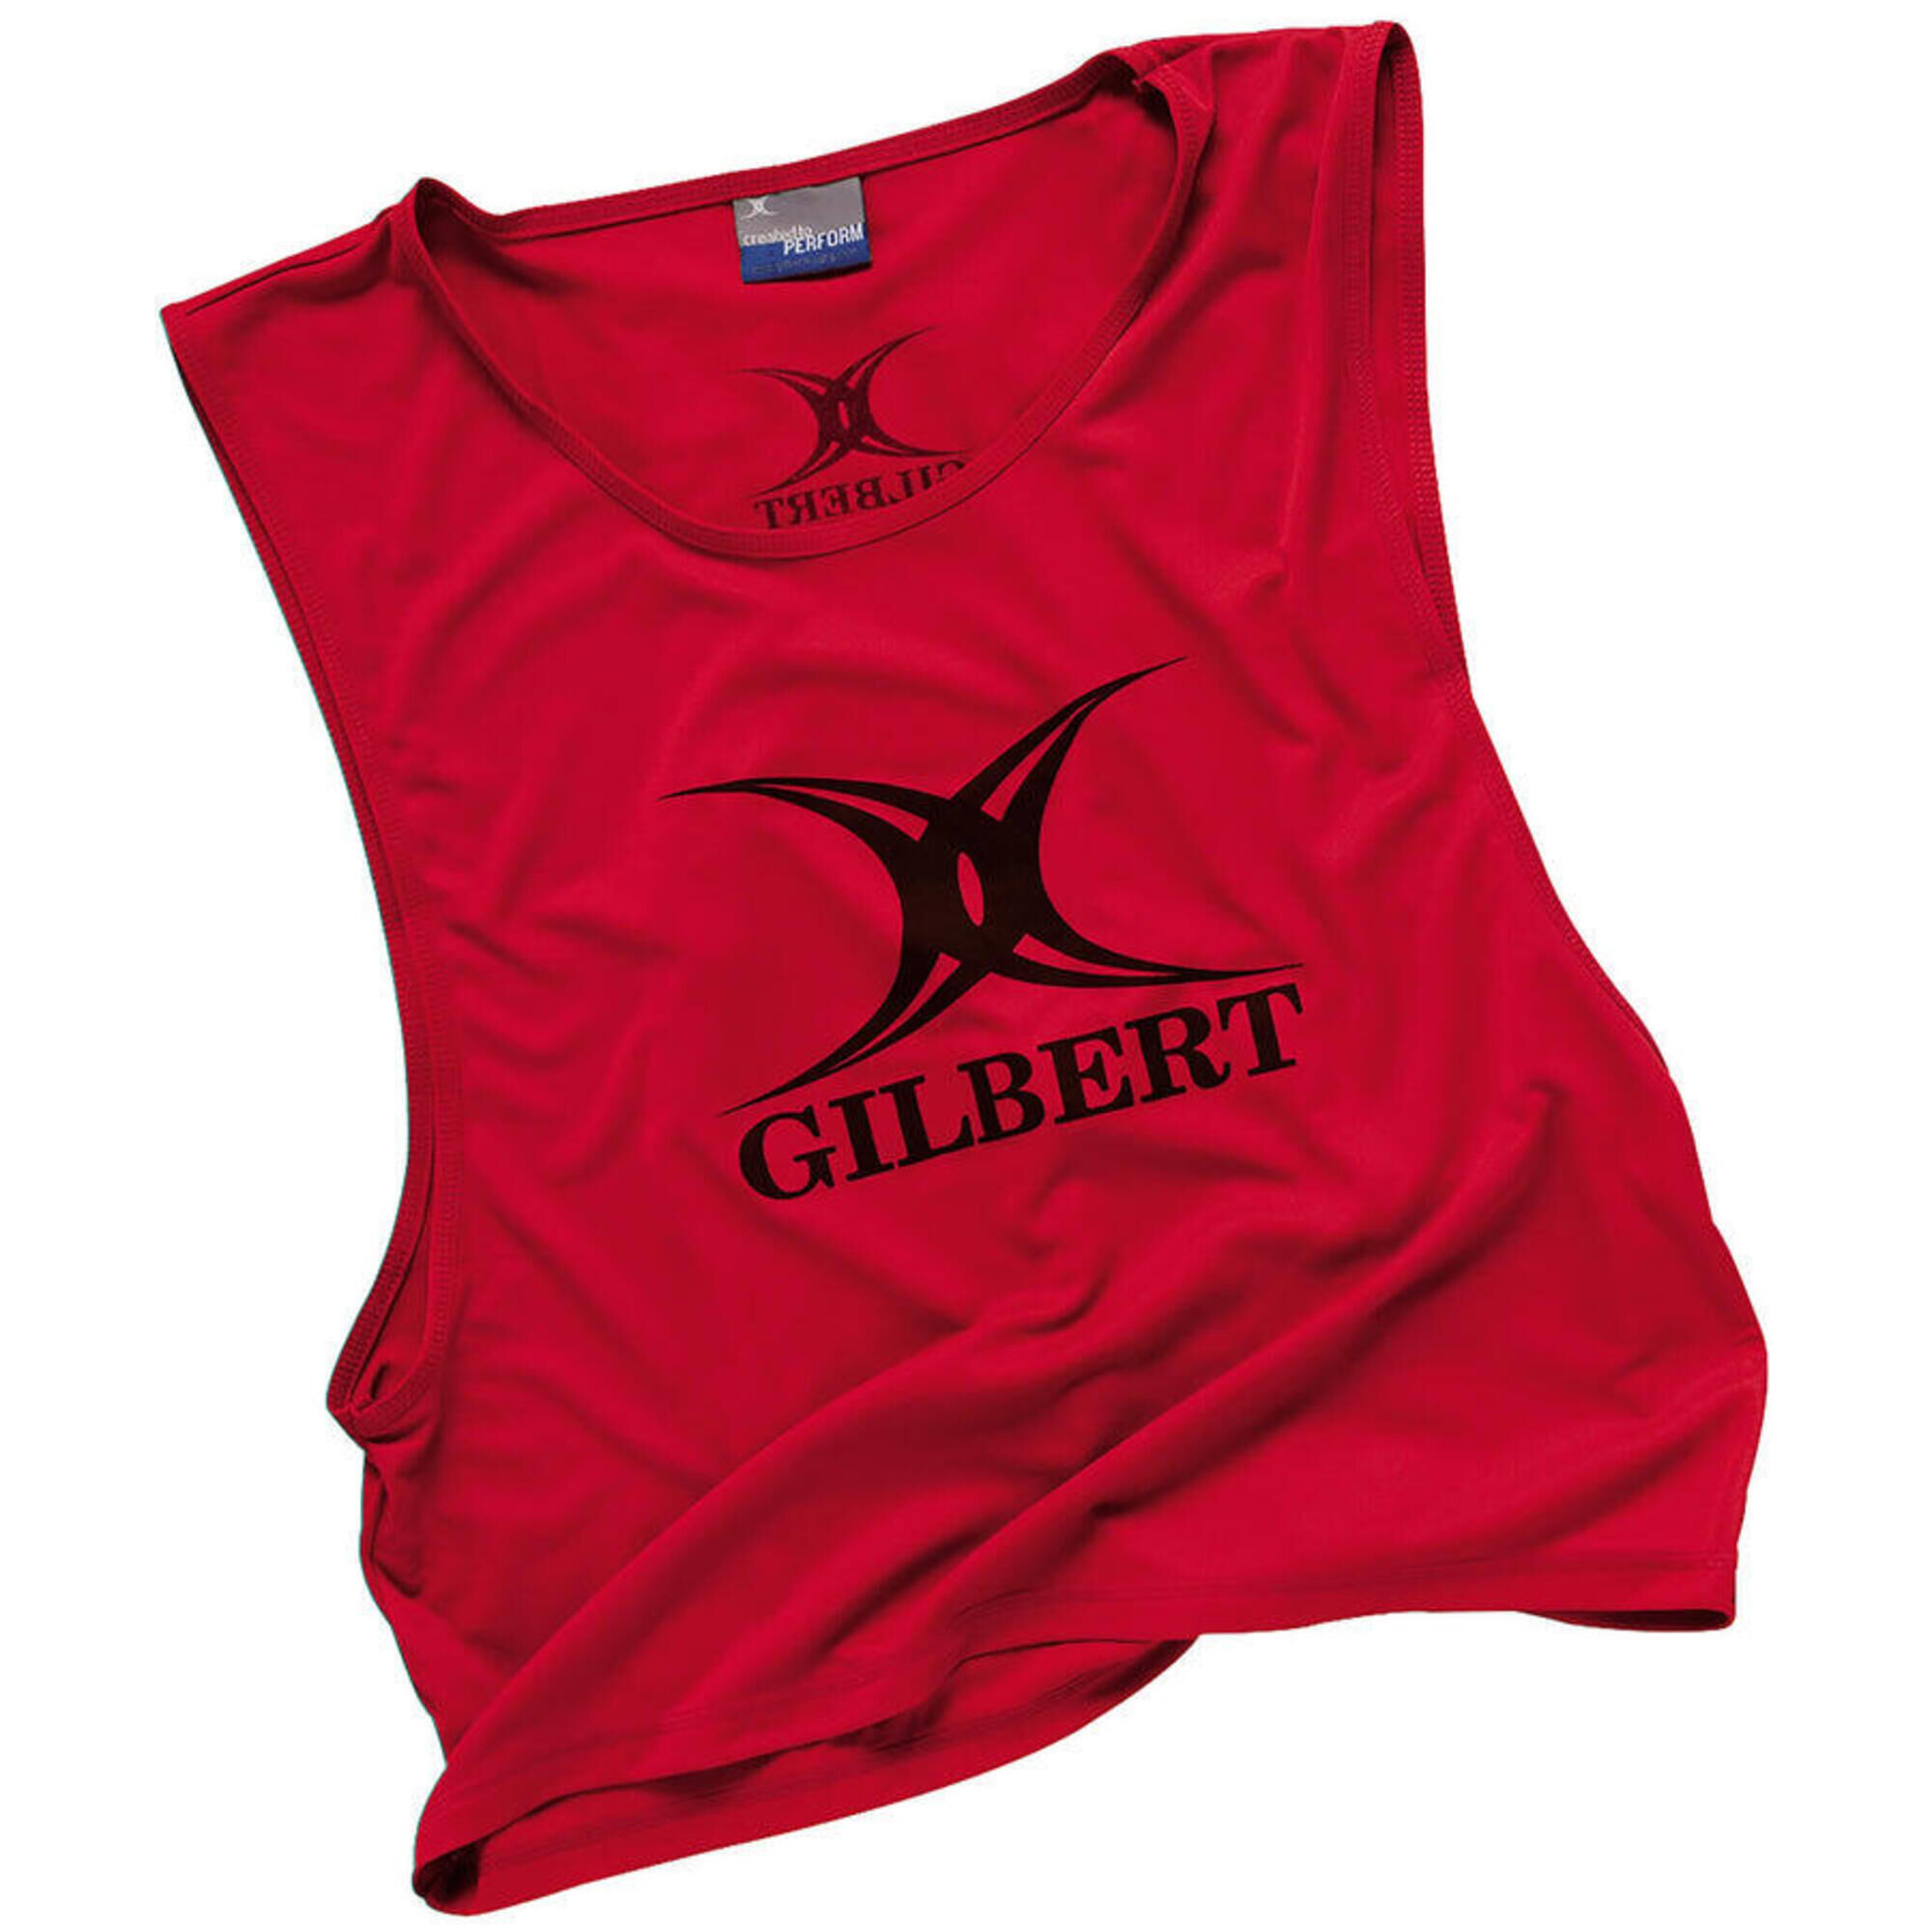 GILBERT Polyester Bib, Red